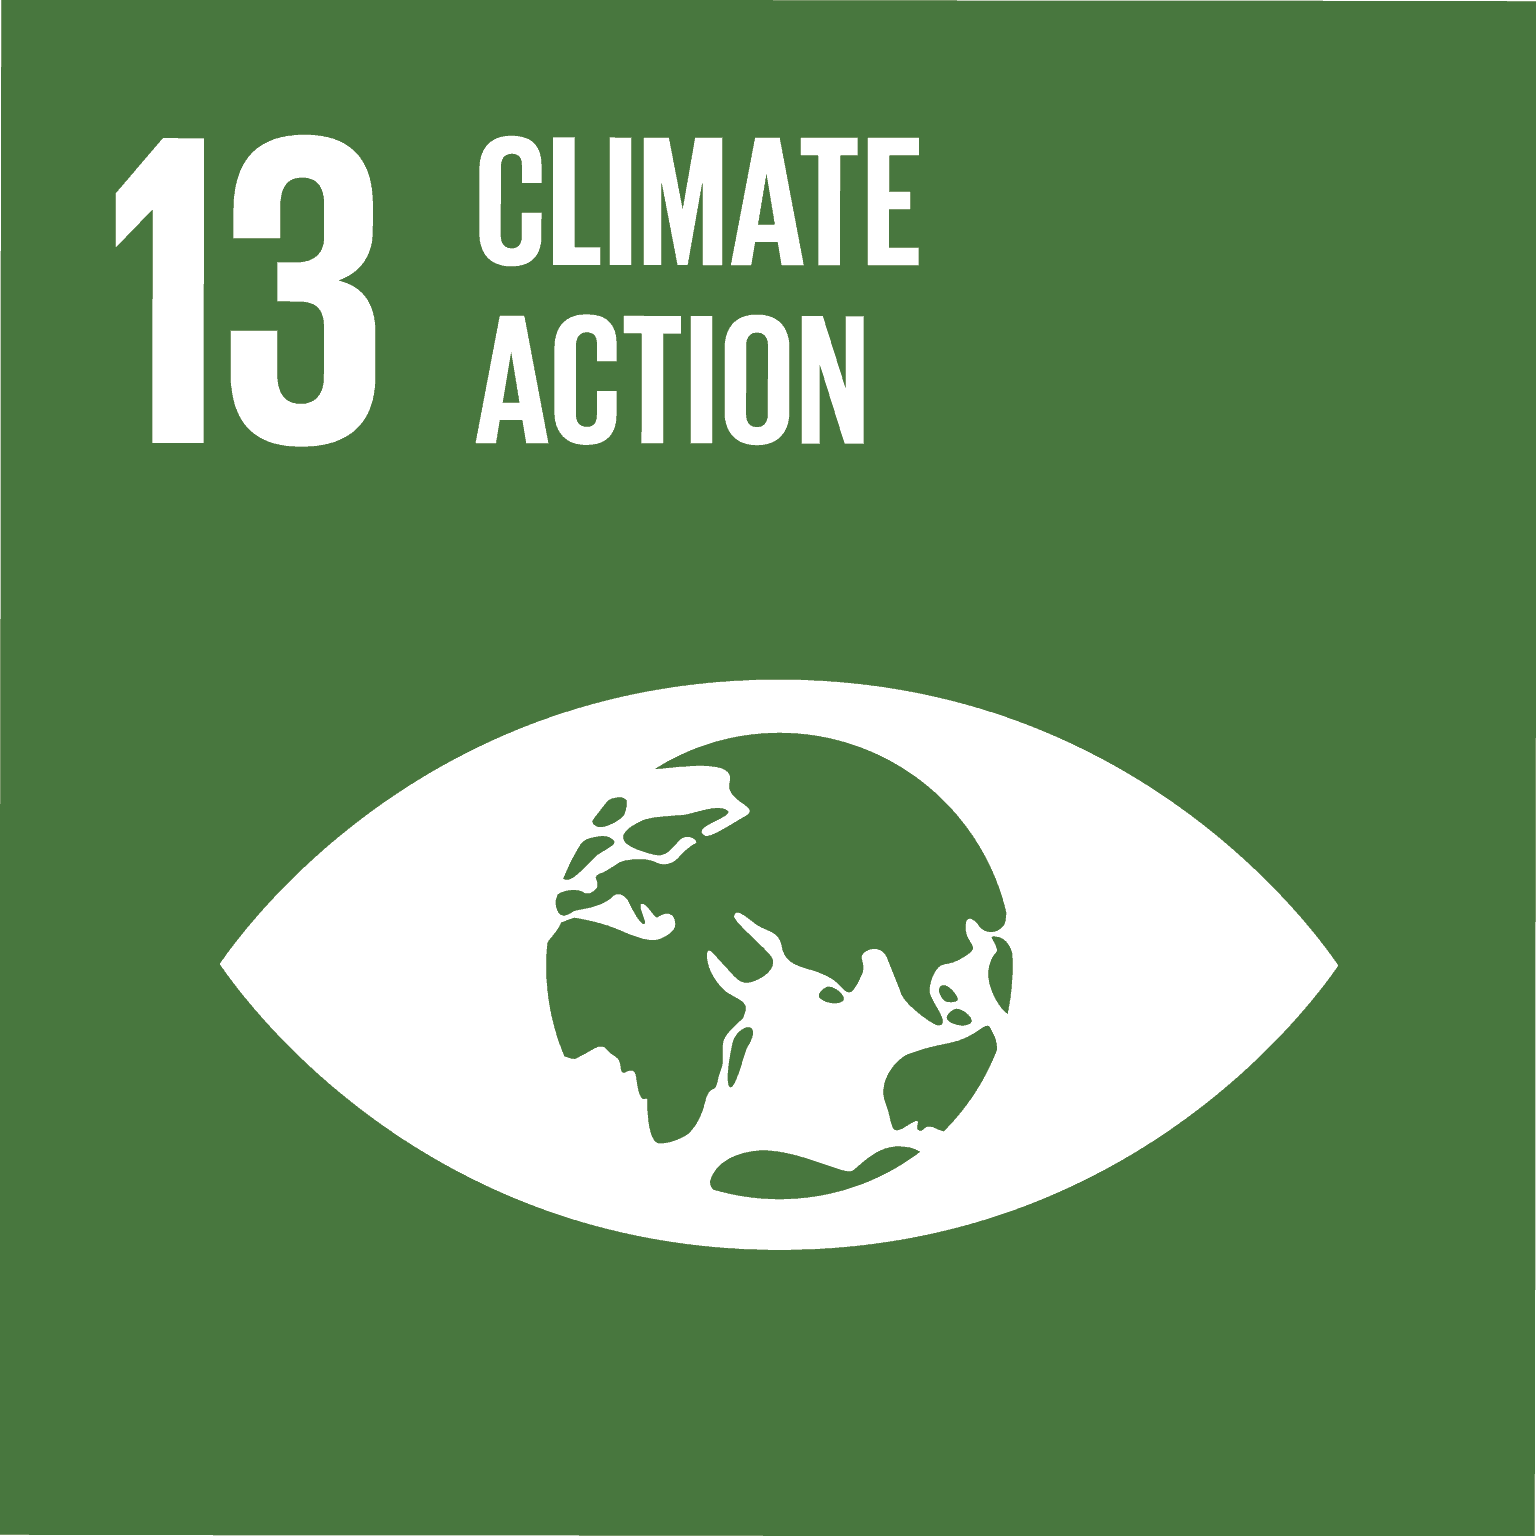 UN SDG Goal 13 - Climate Action